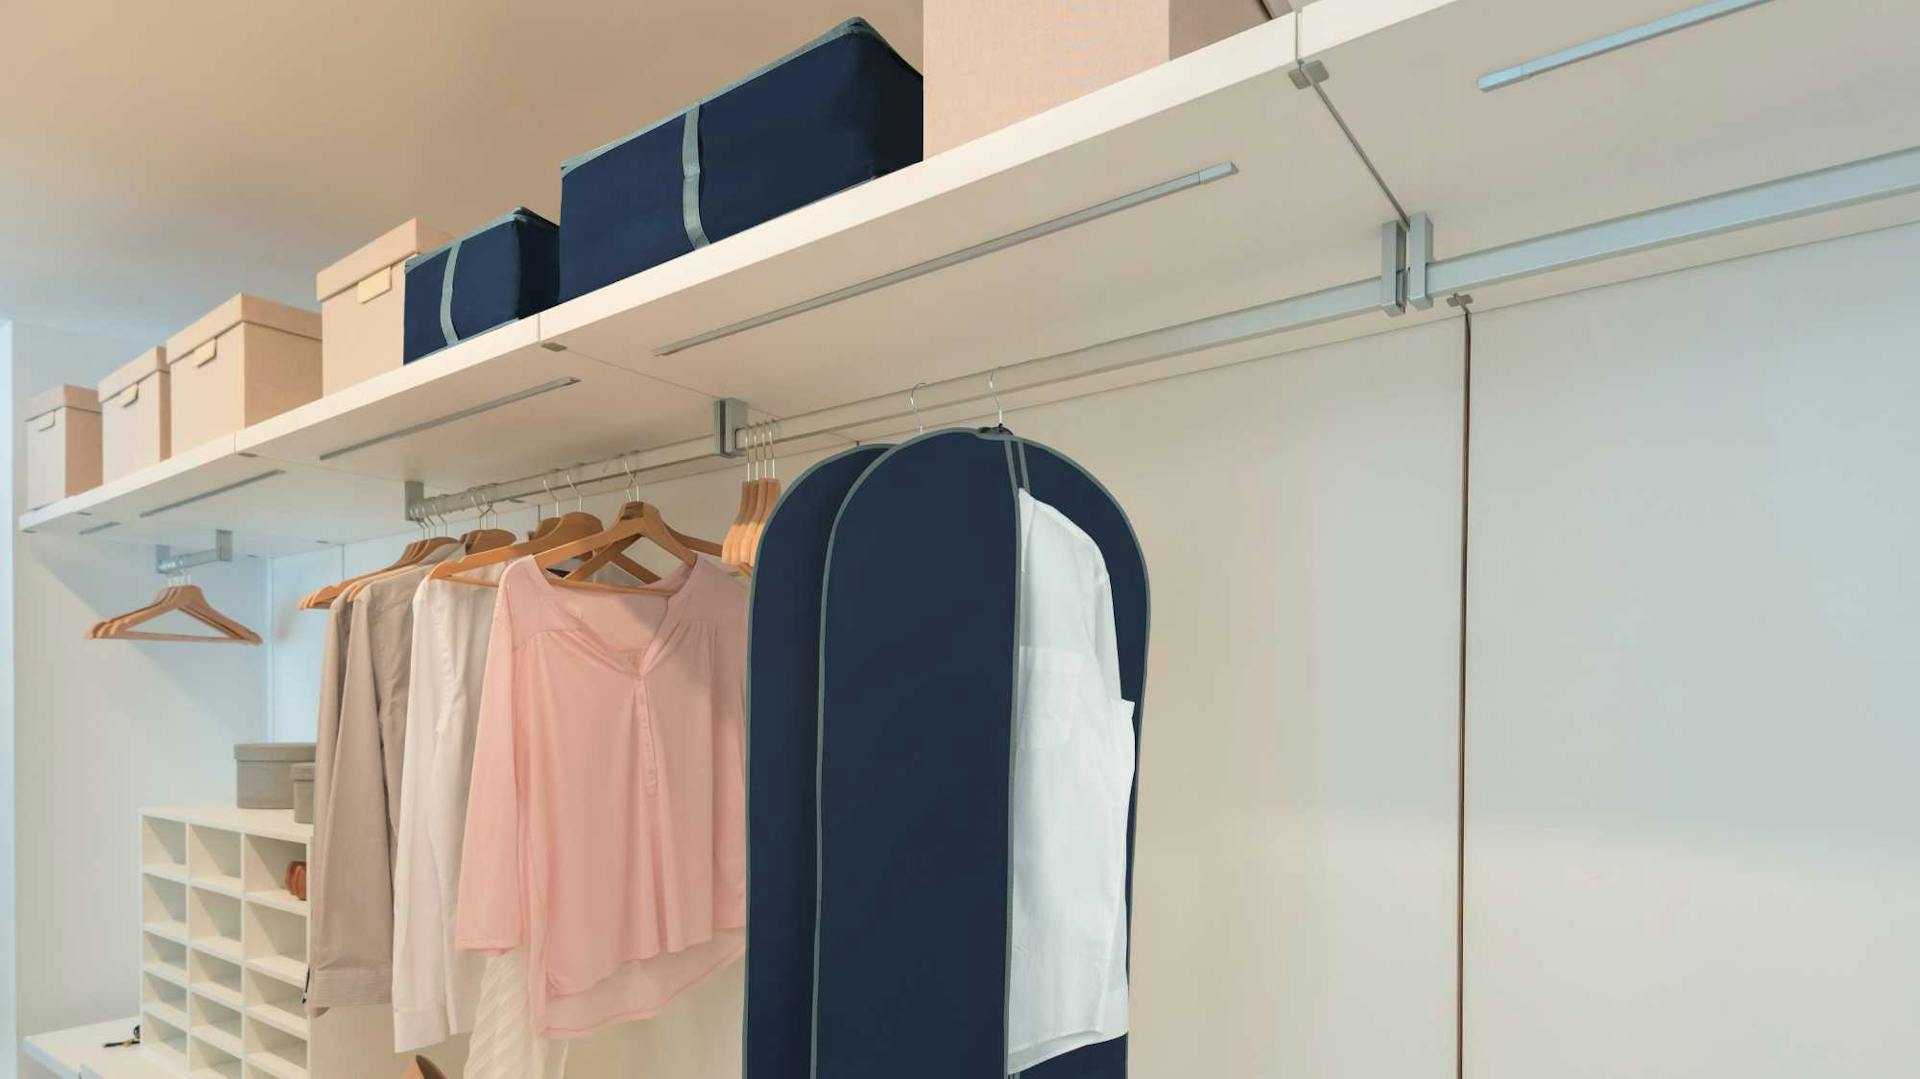 Offener und sortierter Kleiderschrank mit Kleidung auf Bügeln und Organisationsboxen